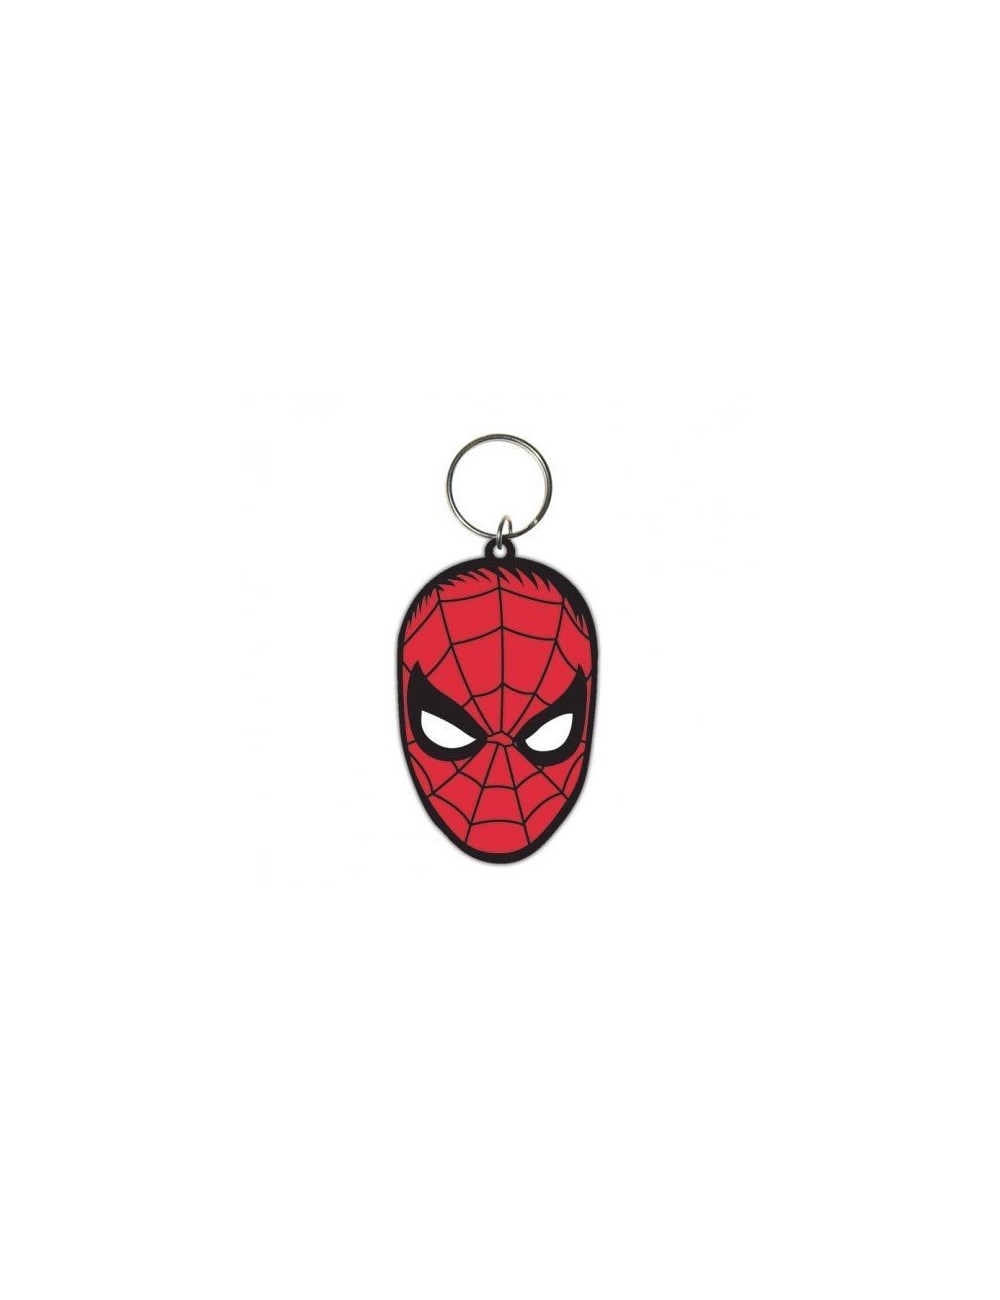 Breloc Marvel Spiderman (Face)